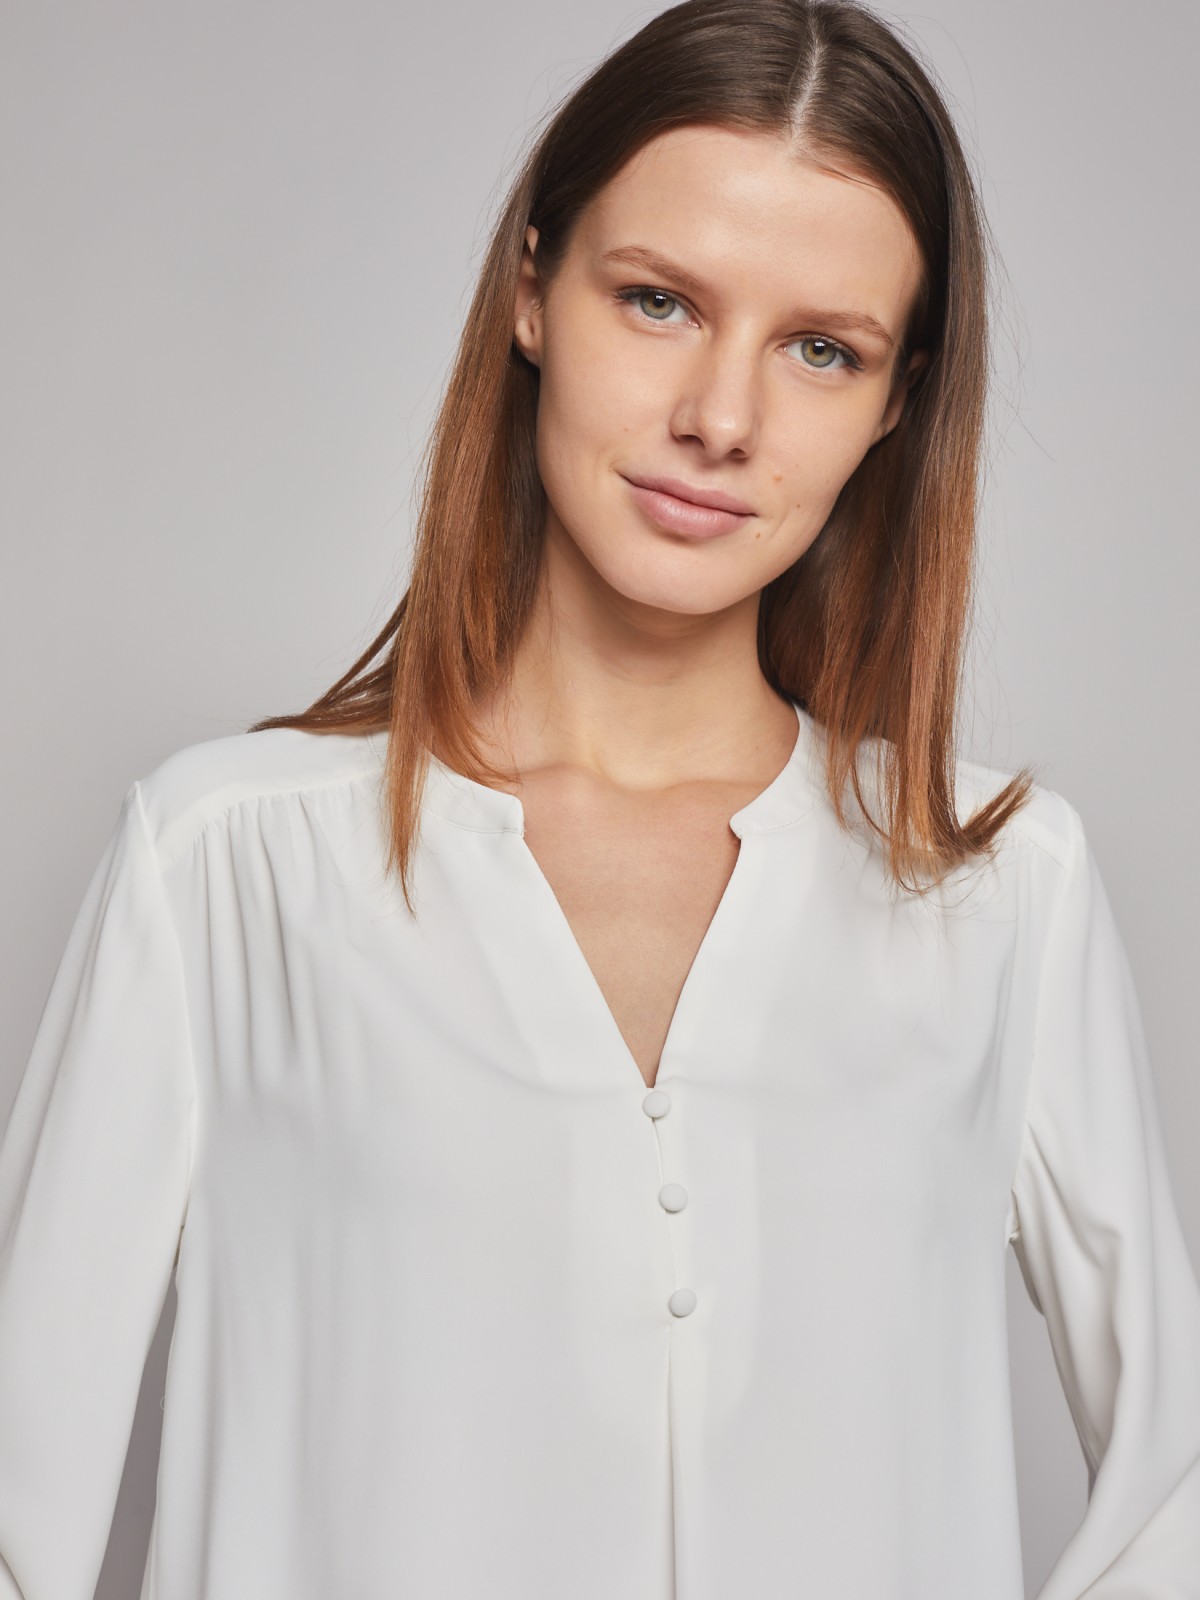 Блузка с длинным рукавом zolla 023121159202, цвет молоко, размер XS - фото 4